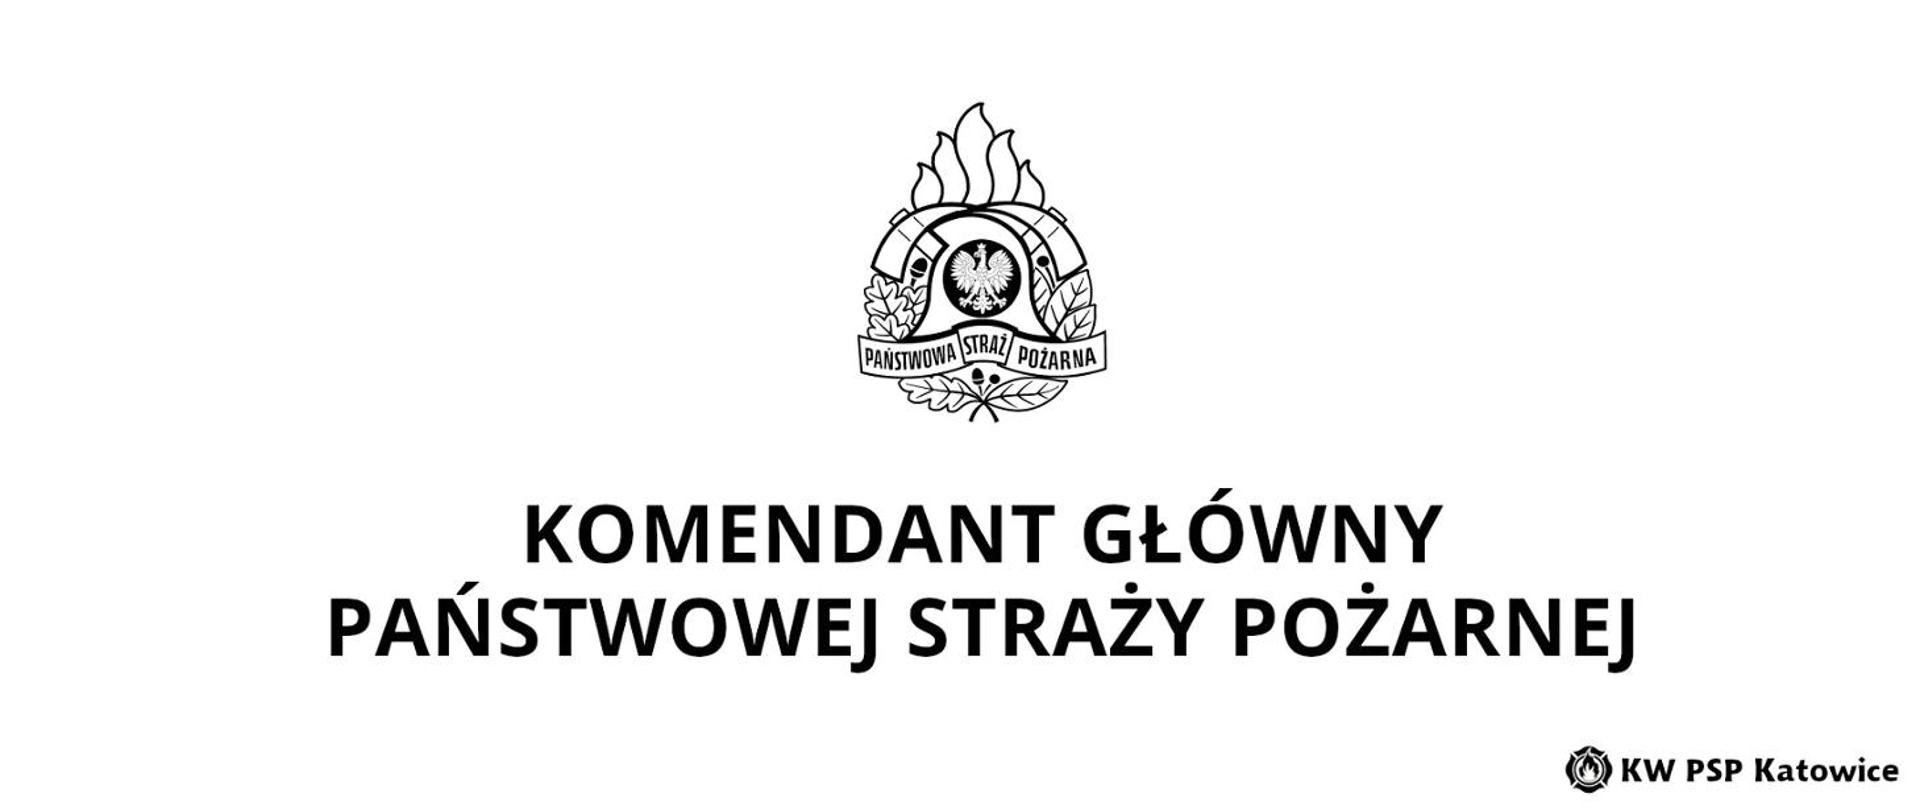 Życzenia_KG_PSP_logo